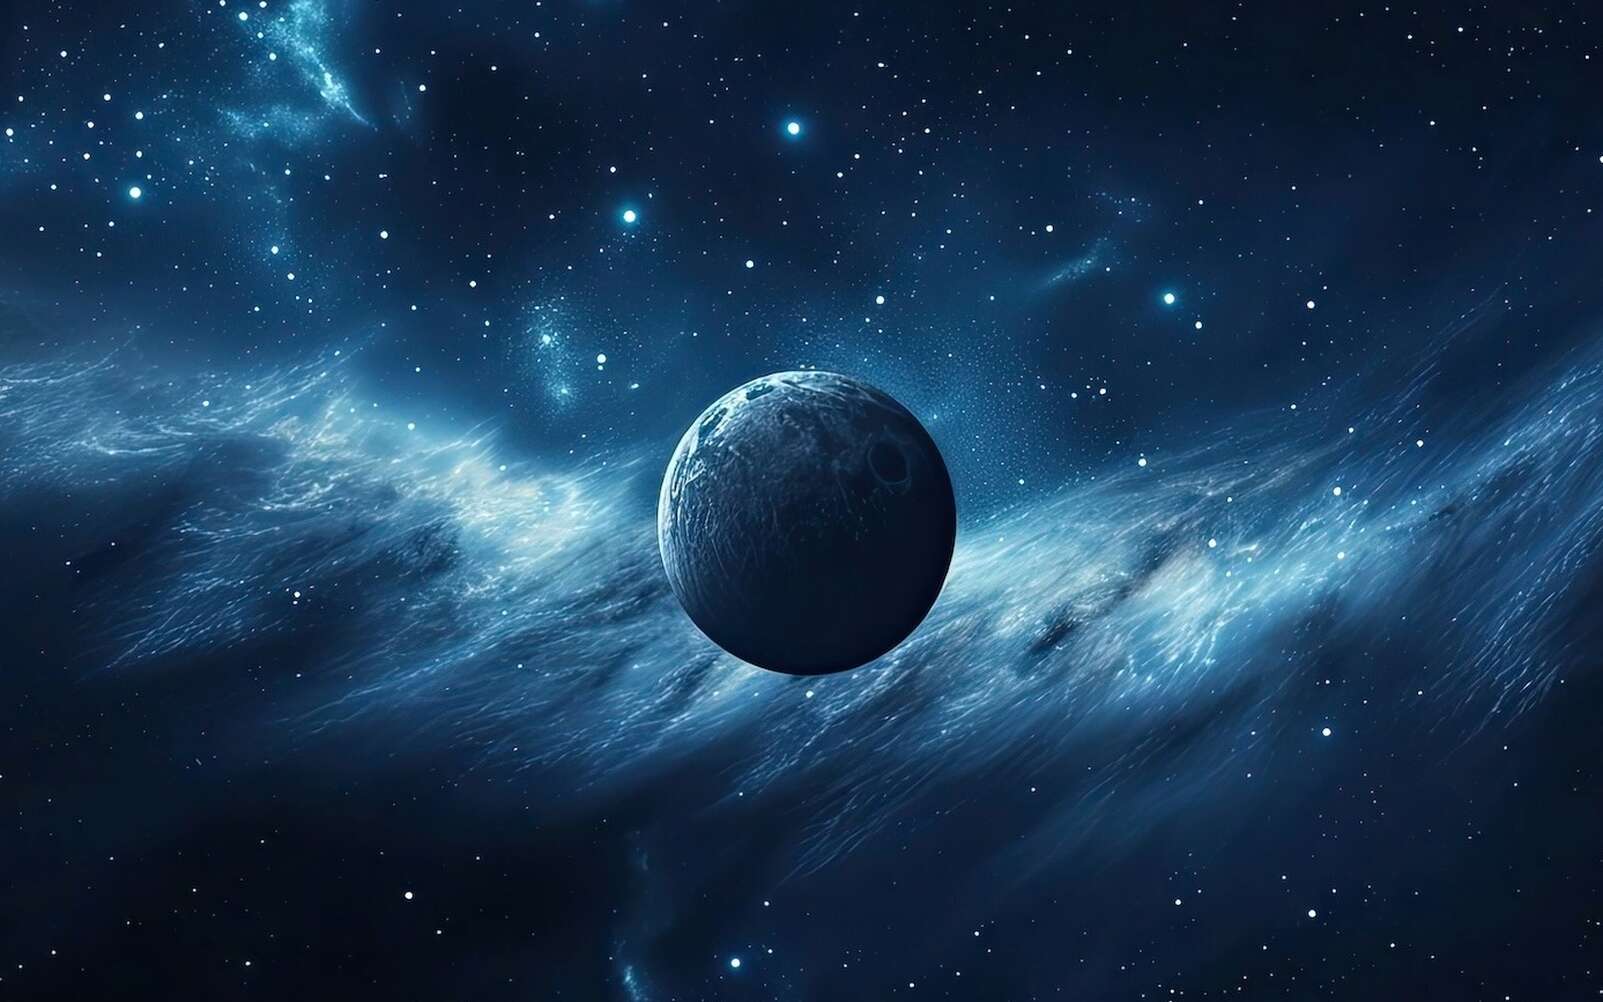 Le télescope spatial Euclid a débusqué des tas de planètes qui errent dans la Voie lactée